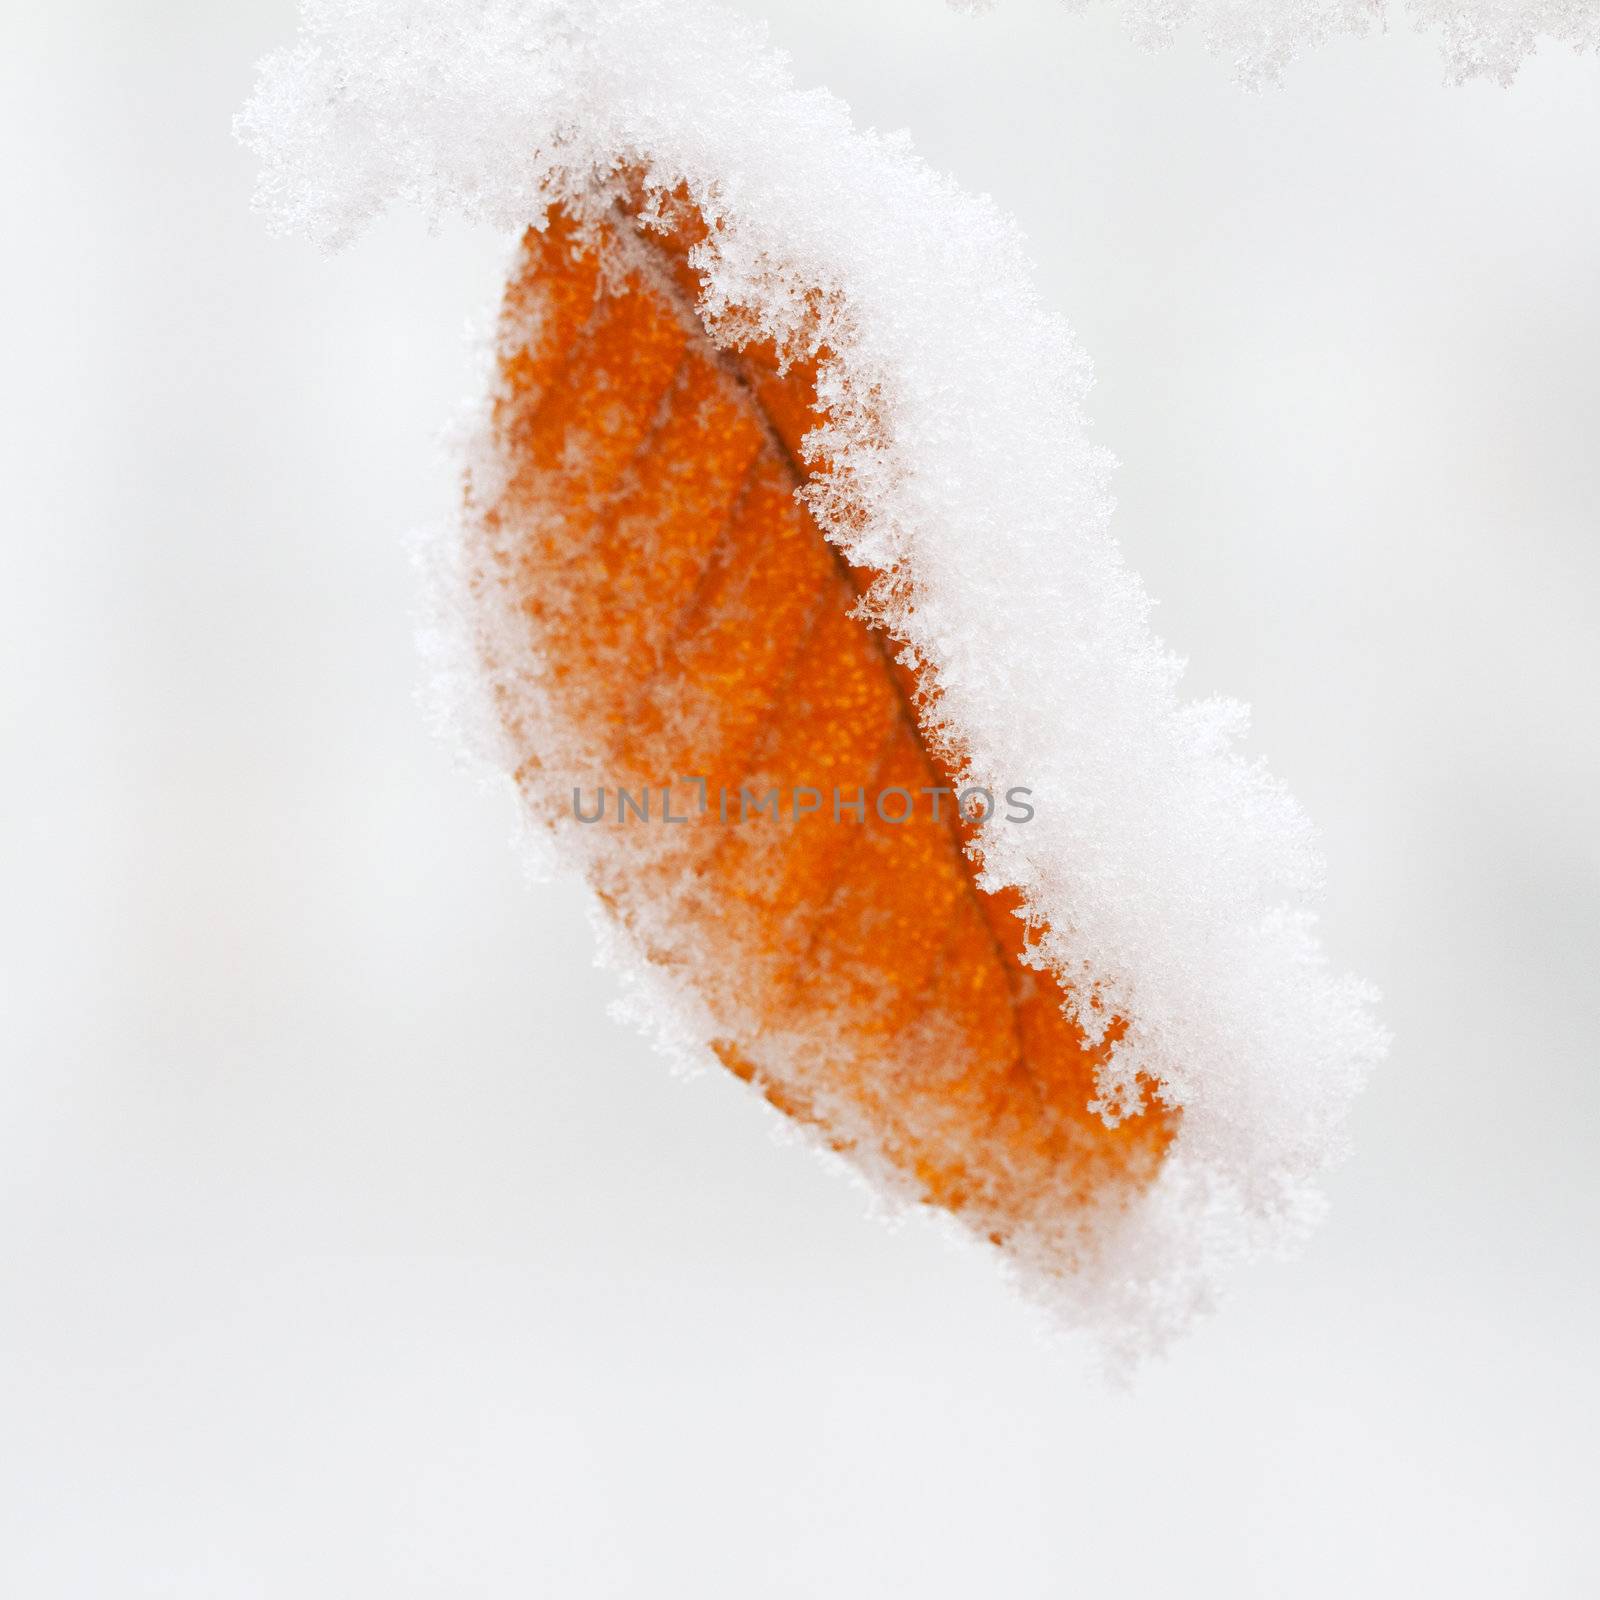 Snow on leaf by Koufax73